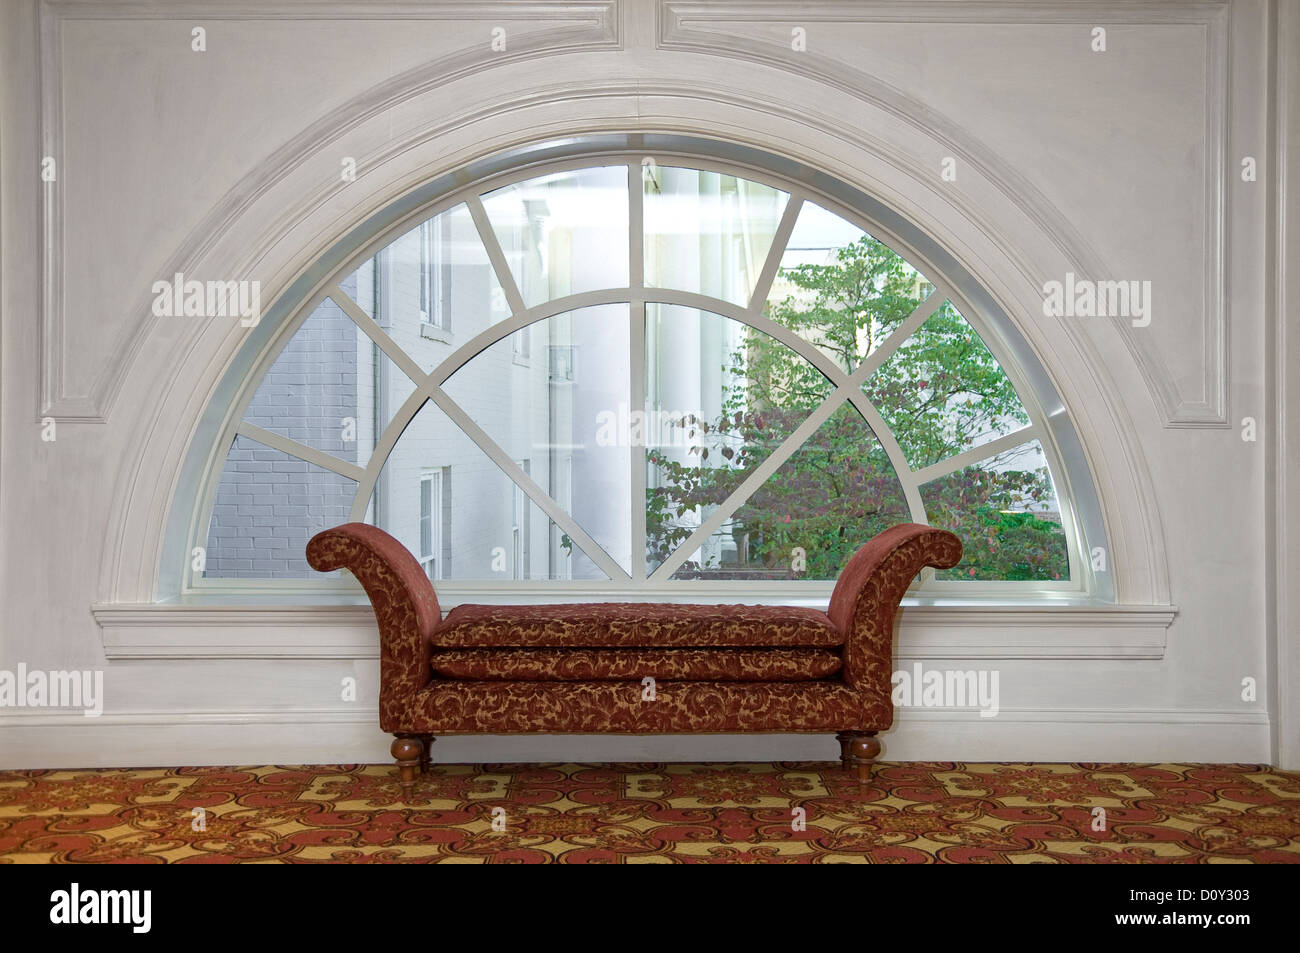 Dormeuse chaise lounge nella parte anteriore della finestra ad arco, Hall Hotel Foto Stock